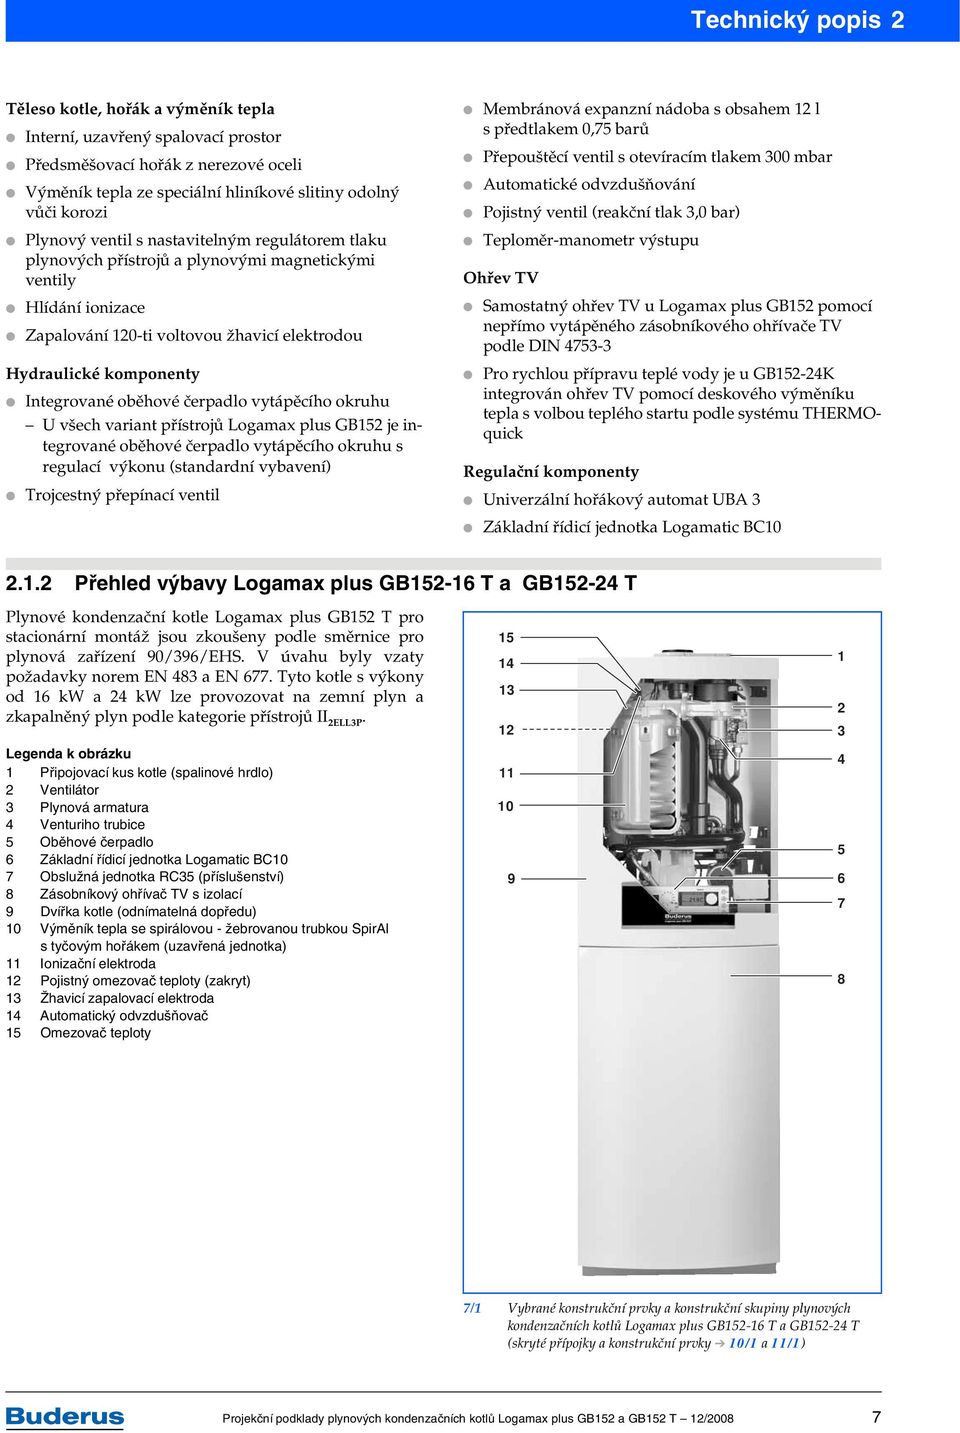 čerpadlo vytápěcího okruhu U všech variant přístrojů Logamax plus GB152 je integrované oběhové čerpadlo vytápěcího okruhu s regulací výkonu (standardní vybavení) Trojcestný přepínací ventil